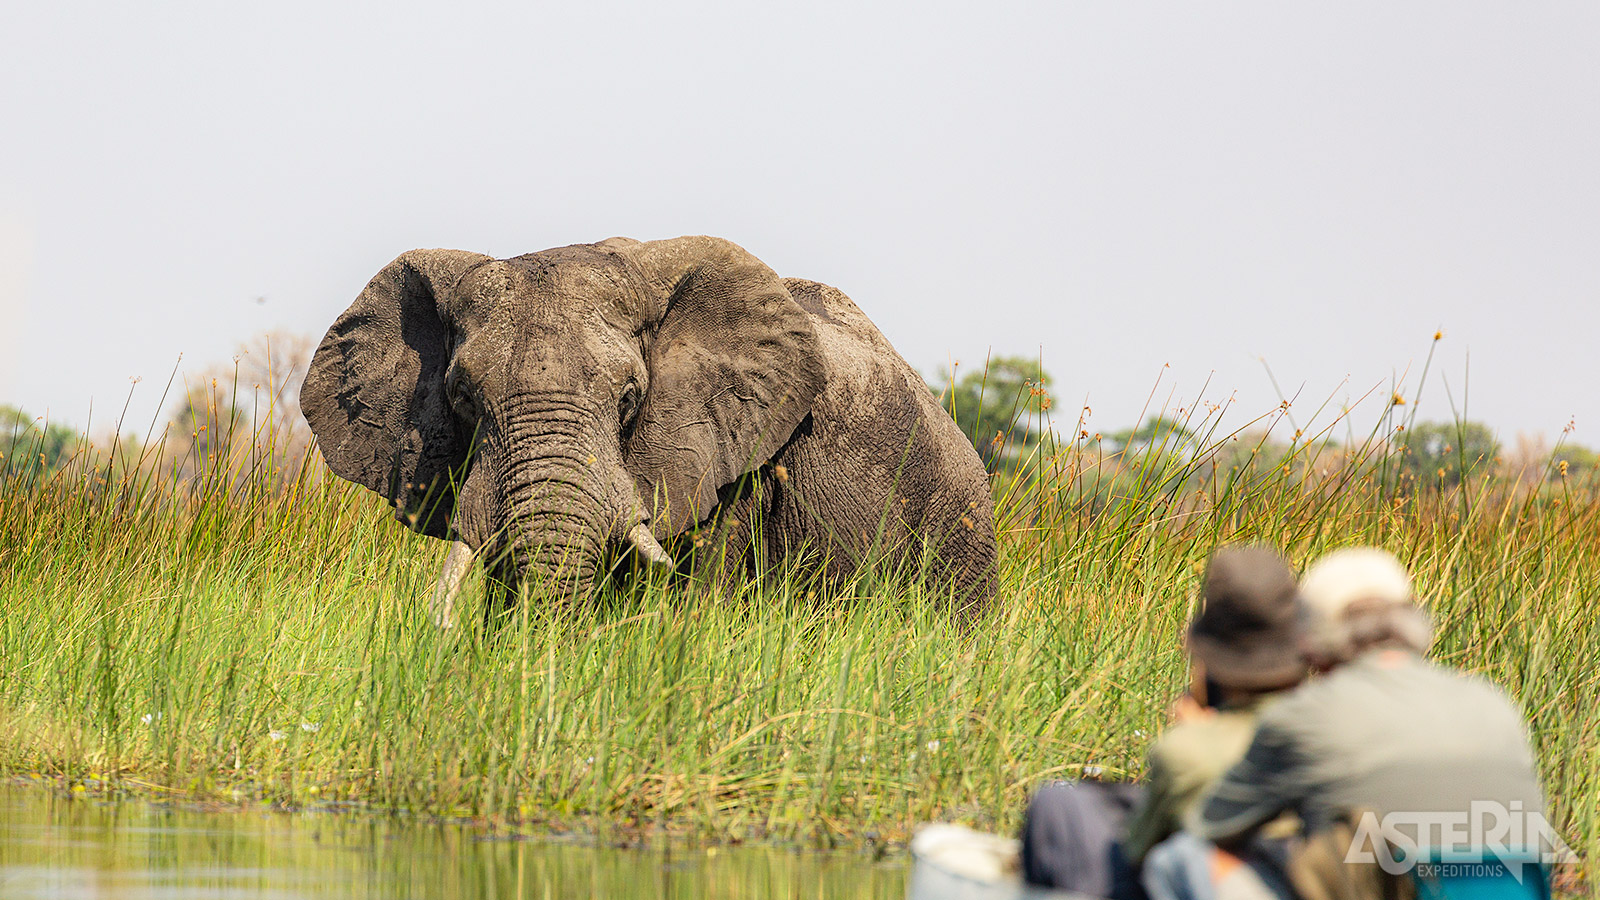 De Okavango delta is een waterrijk gebied met een grote diversiteit aan fauna en flora